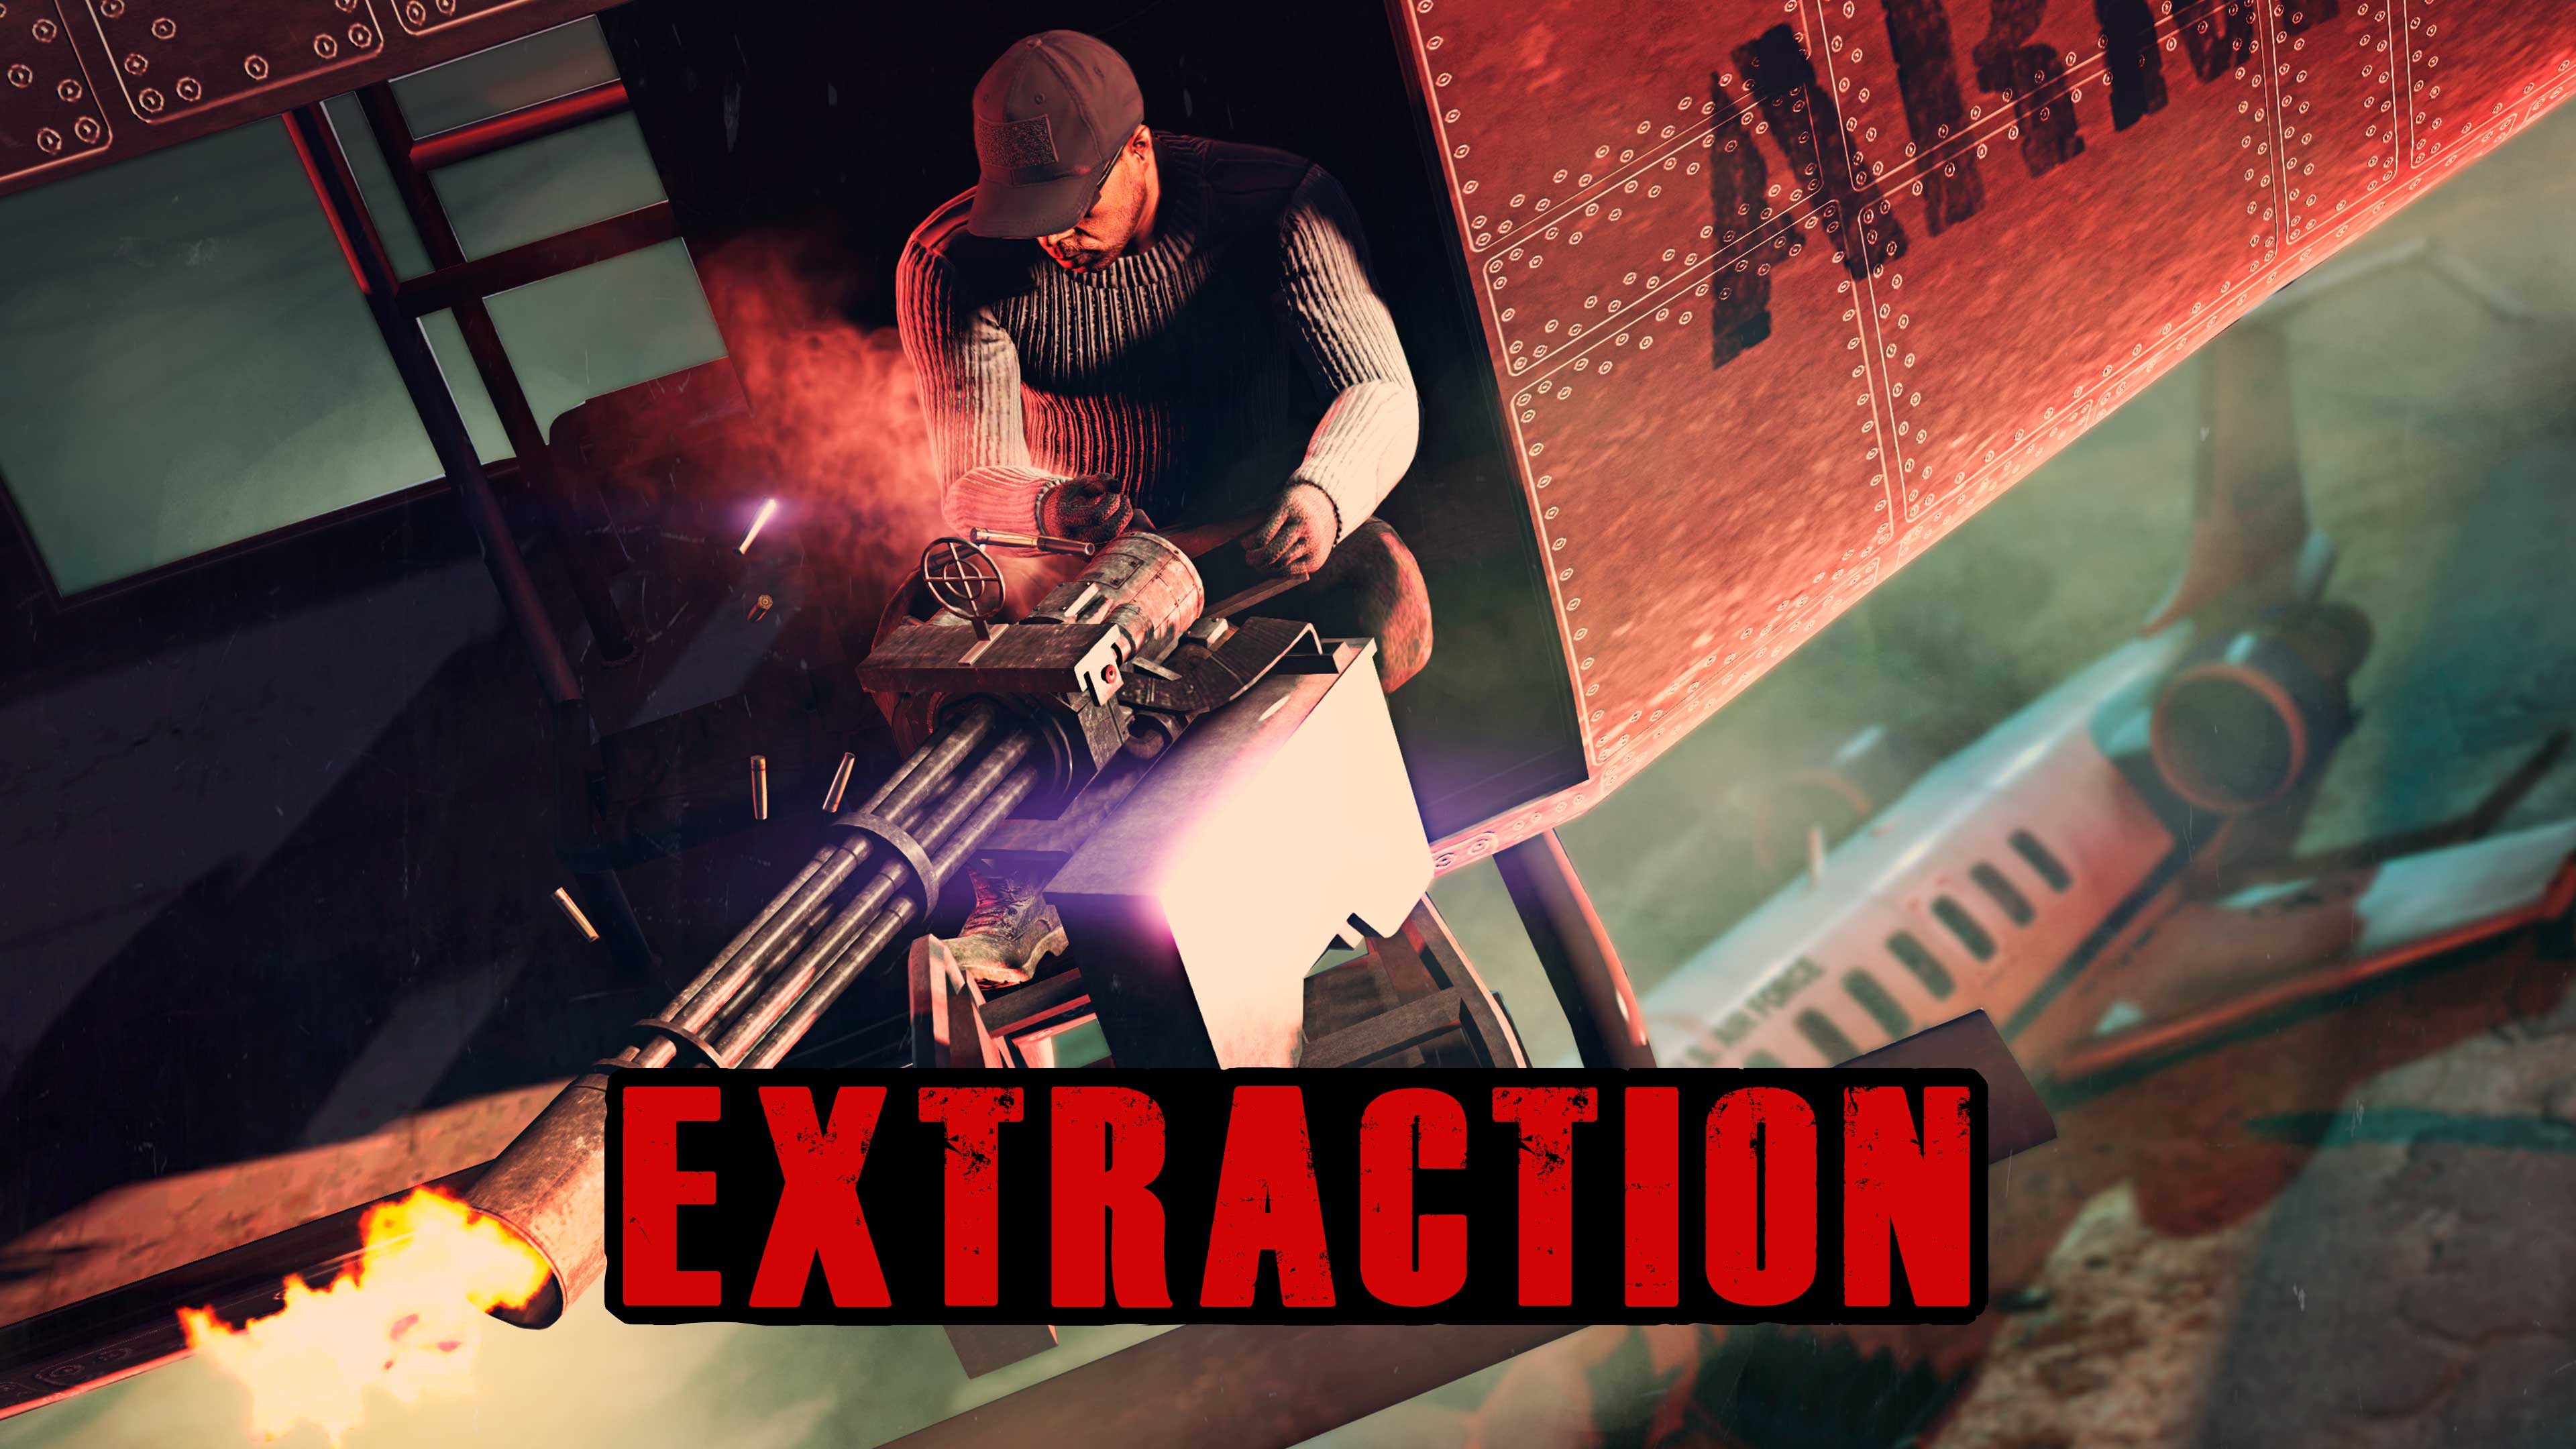 Pôster do evento de Exfiltração com um jogador de GTA Online disparando uma Minigun de um helicóptero.